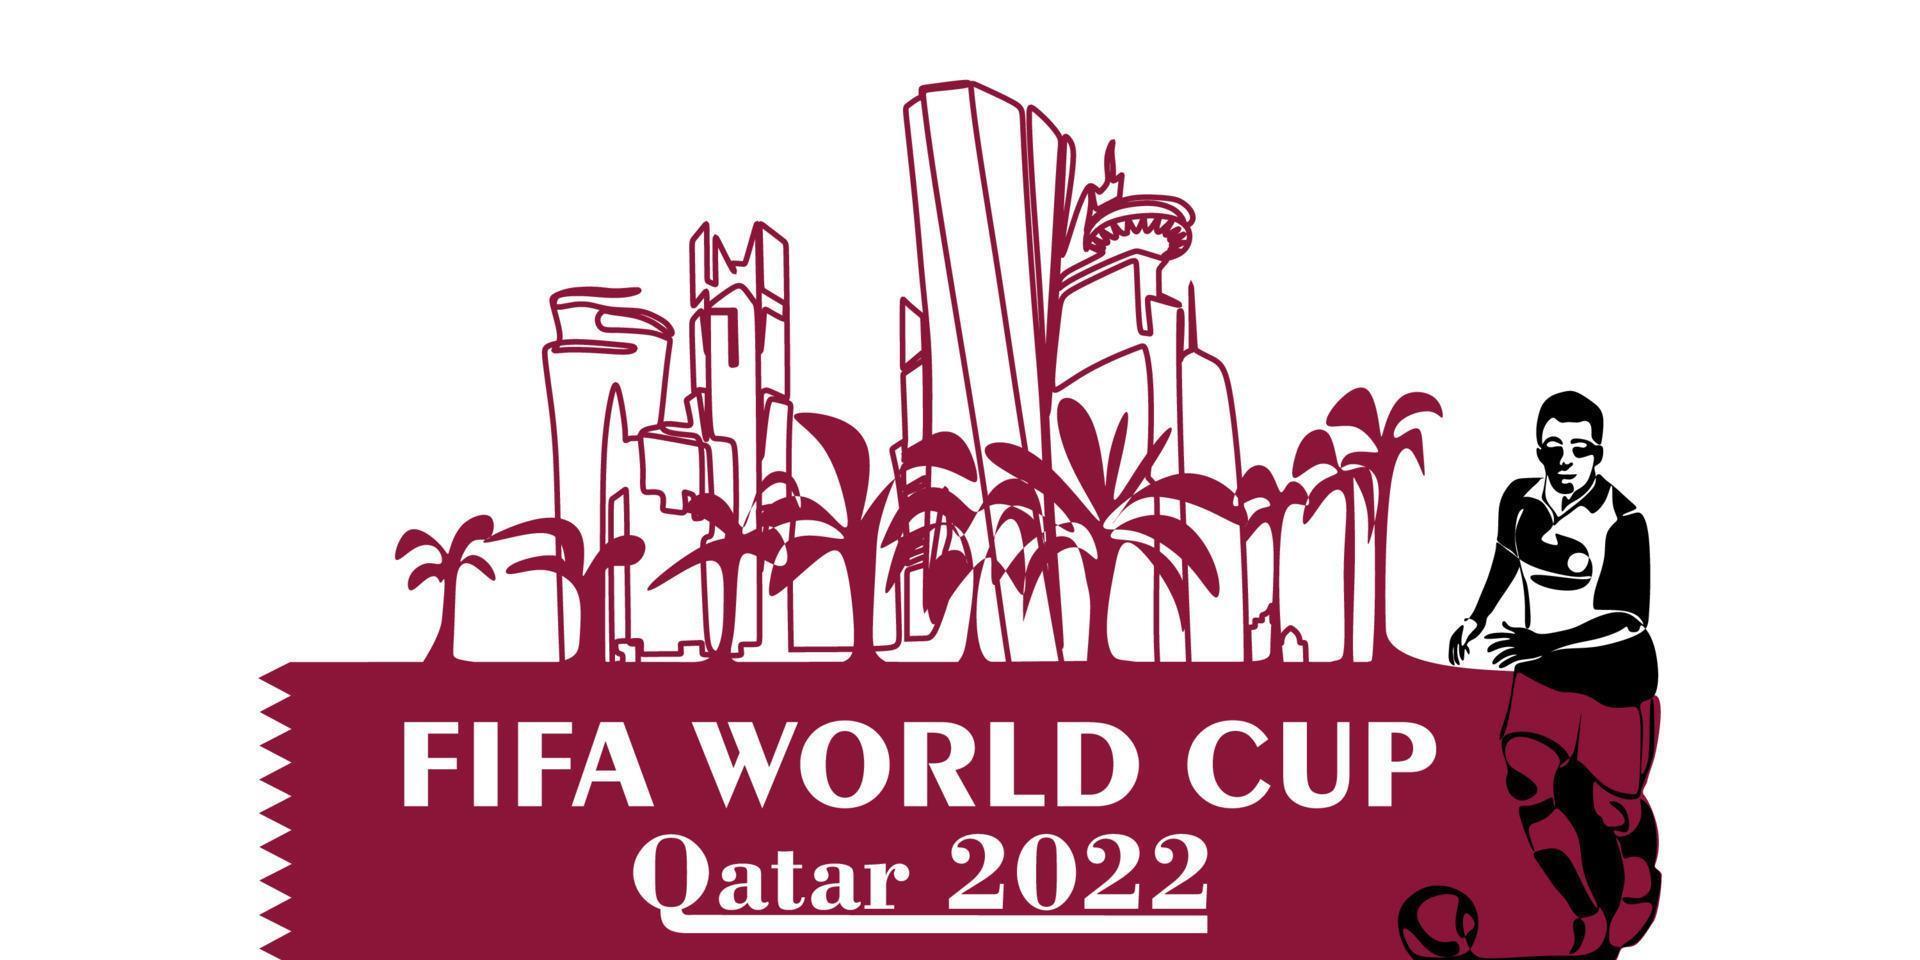 värld kopp i qatar i 2022 baner. stiliserade vektor isolerat modern illustration av de huvudstad doha stad med symbol, färger och flagga